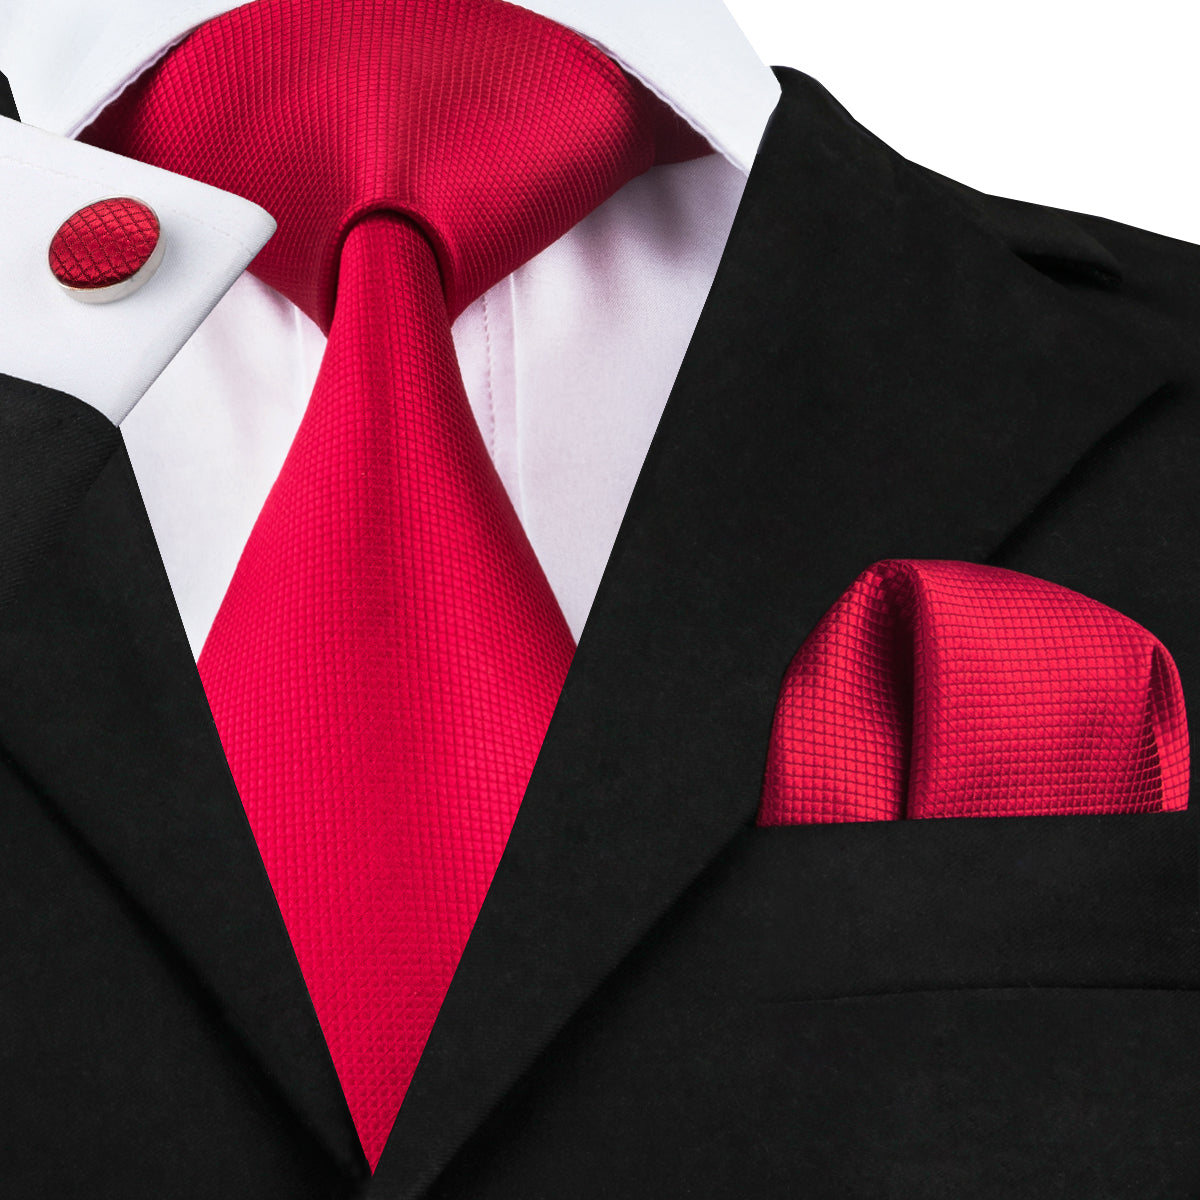 Red Necktie